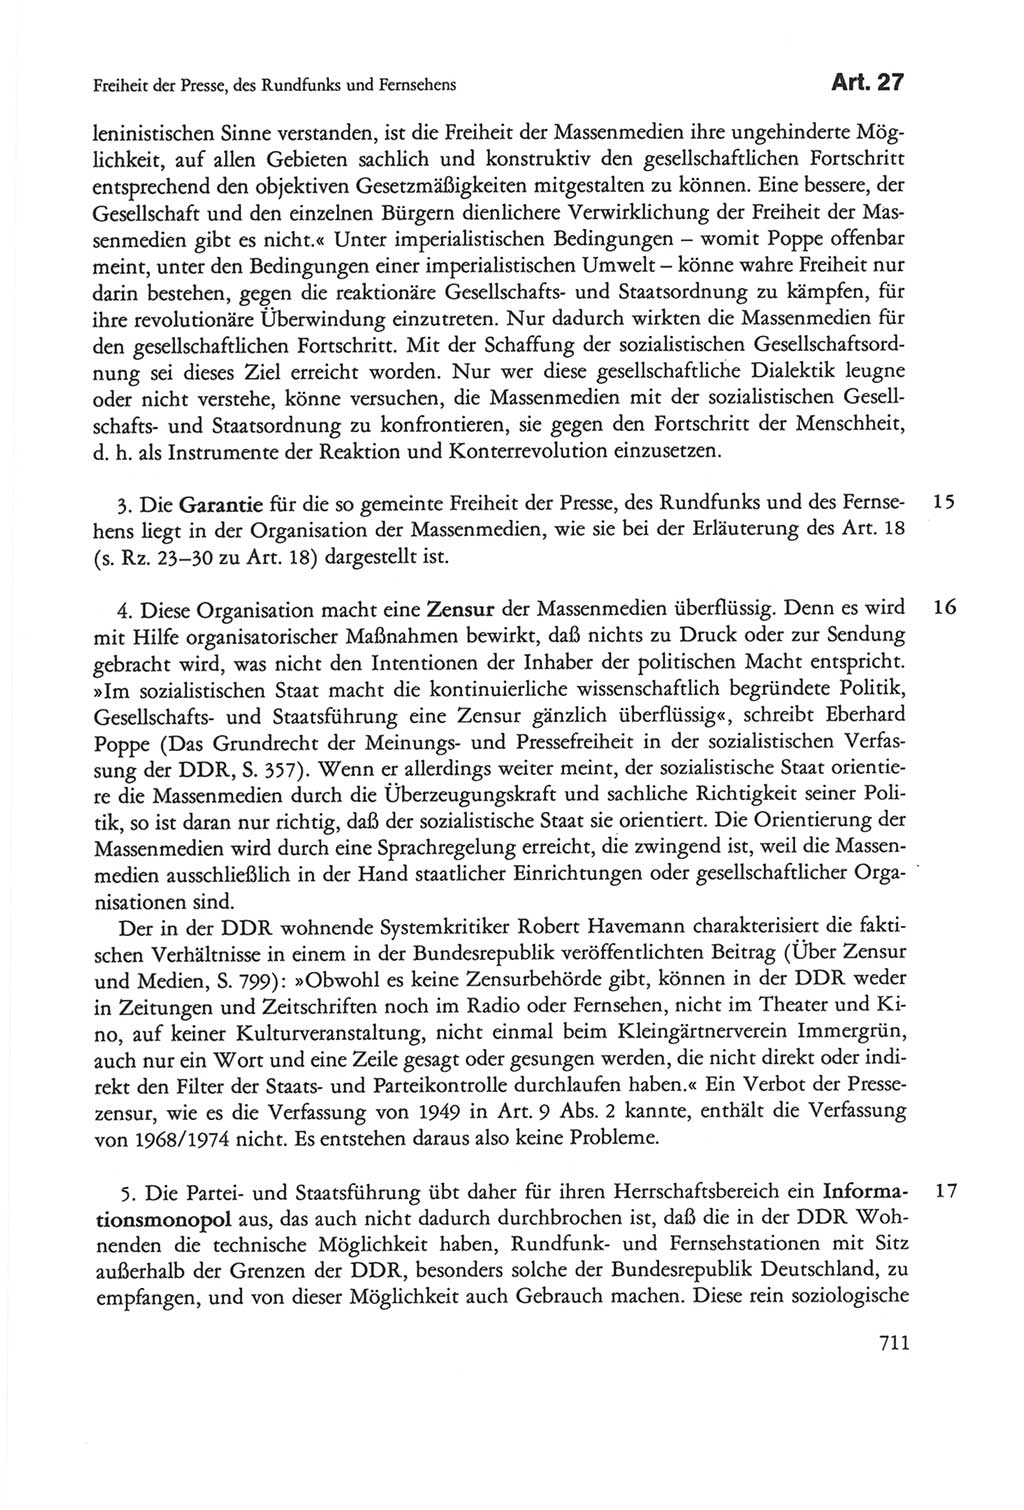 Die sozialistische Verfassung der Deutschen Demokratischen Republik (DDR), Kommentar 1982, Seite 711 (Soz. Verf. DDR Komm. 1982, S. 711)